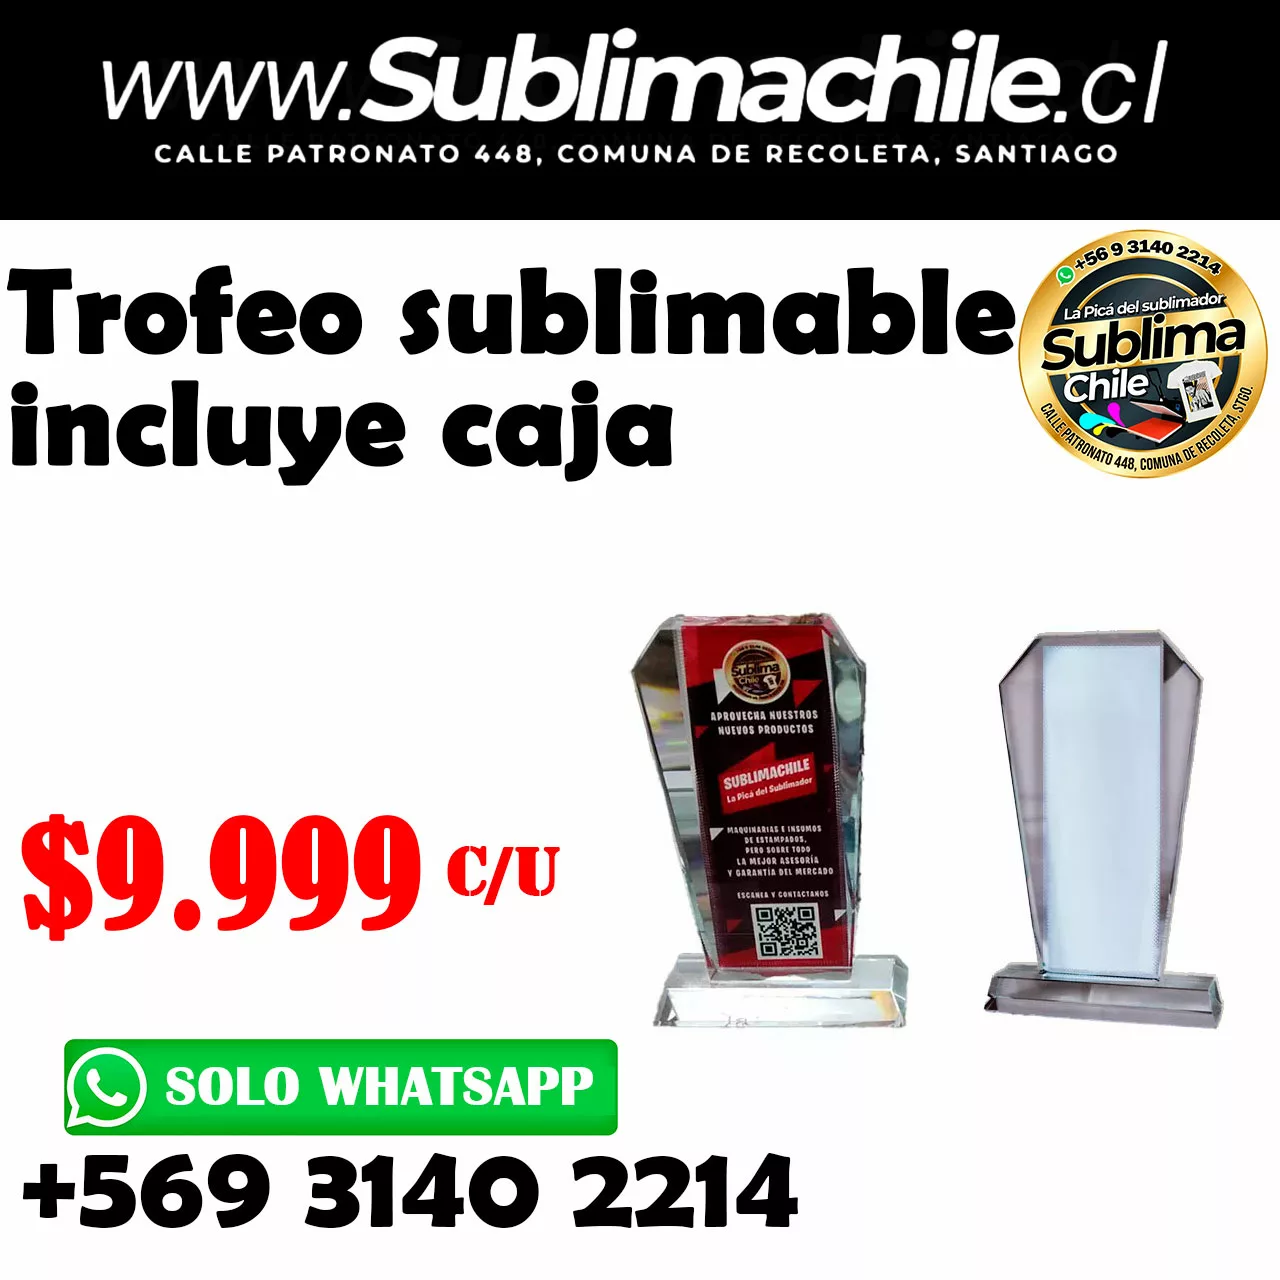 Termo digital sublimable 350ml - Sublimachile - Santiago Chile